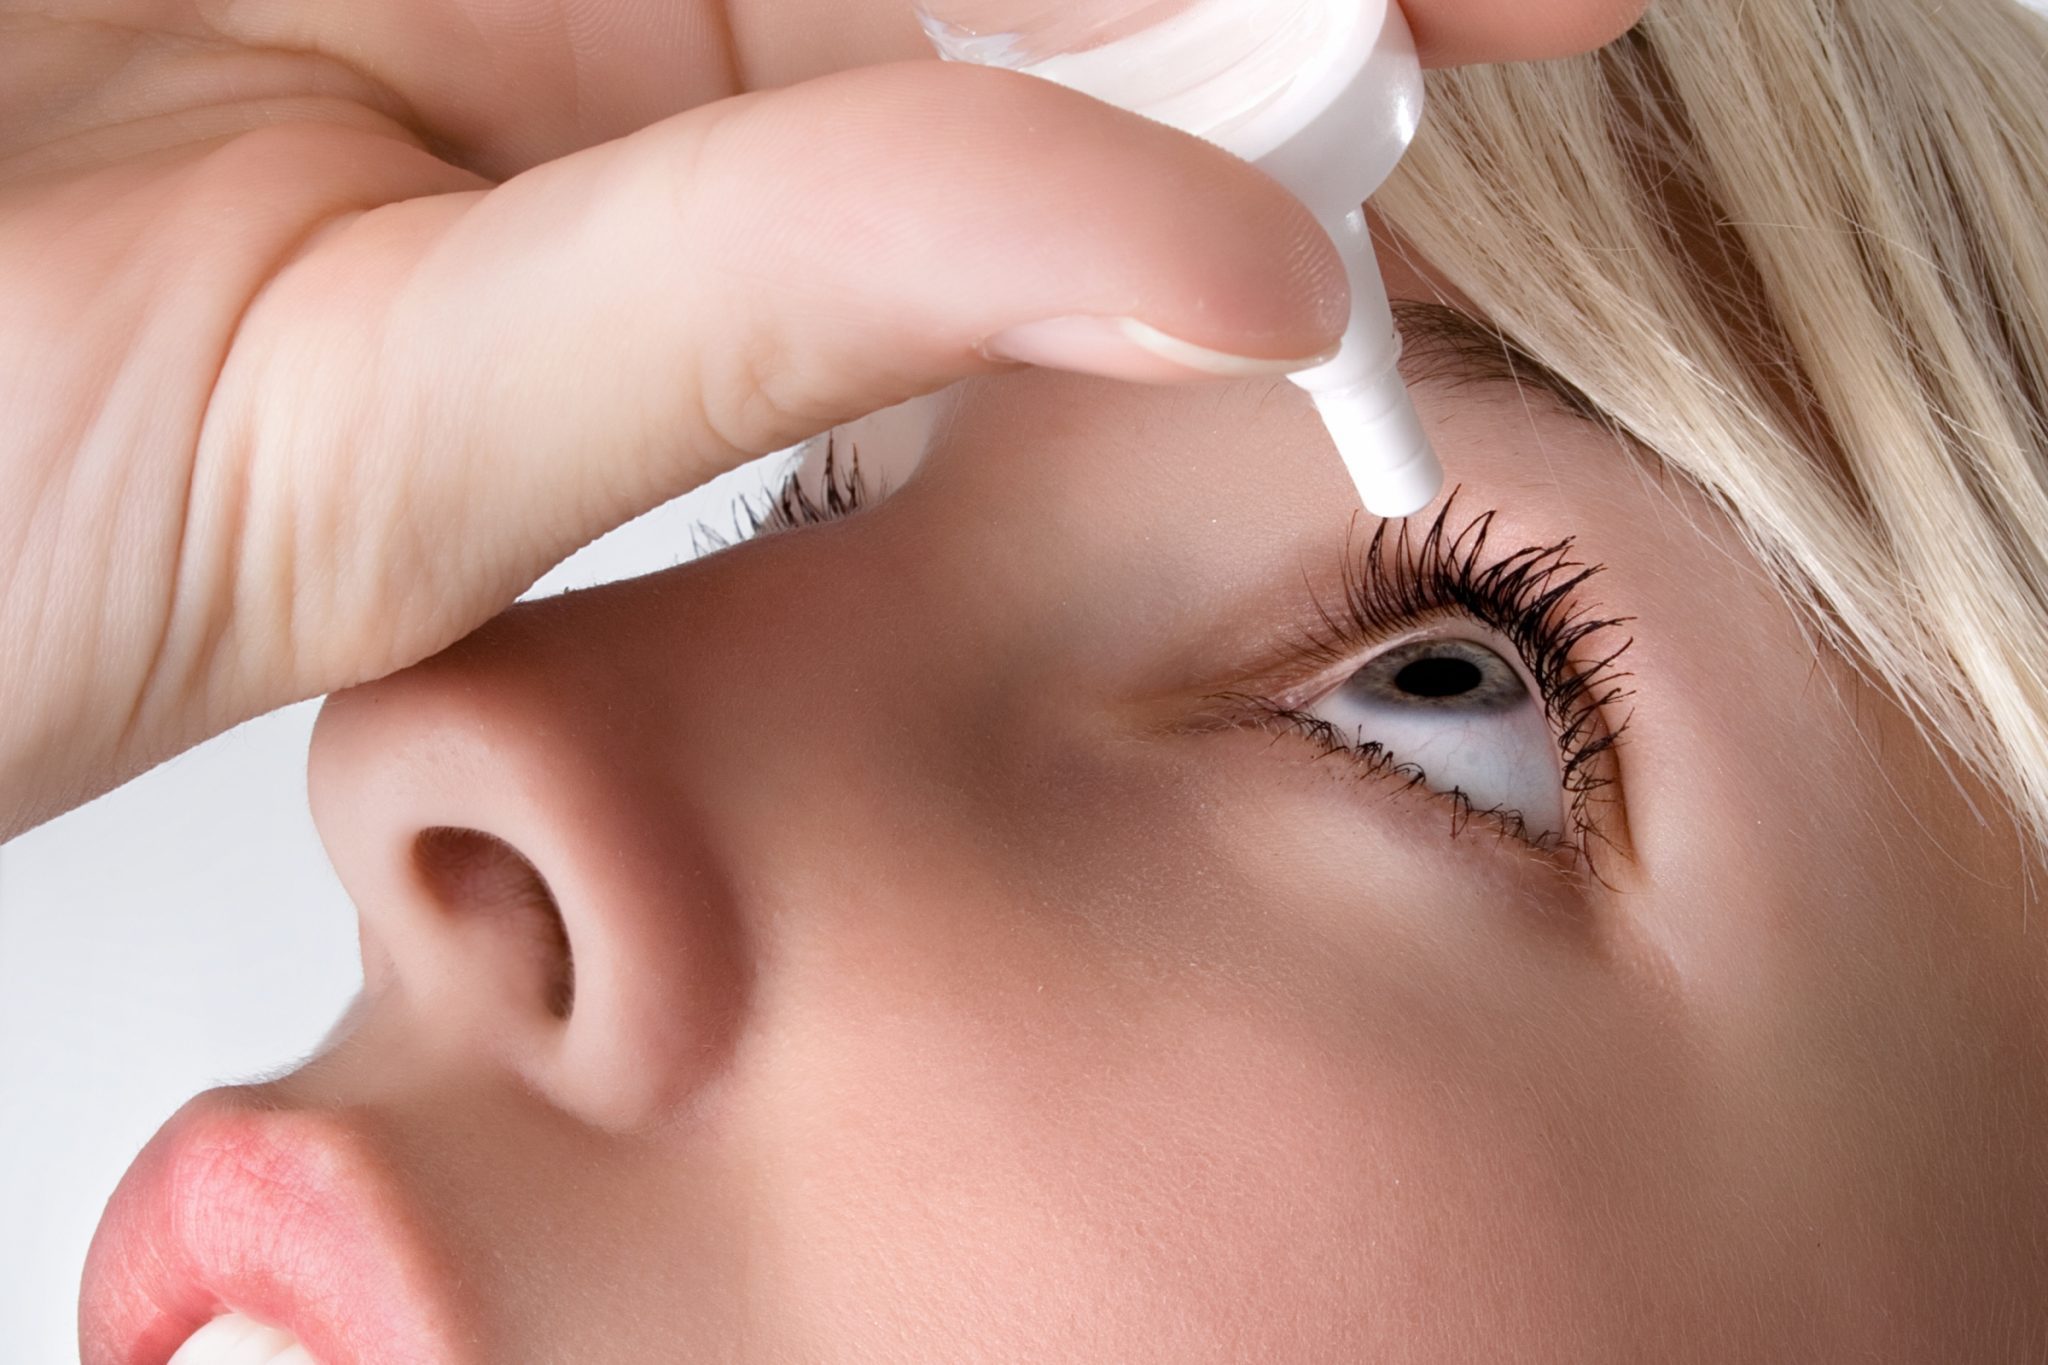 درمان خشکی چشم